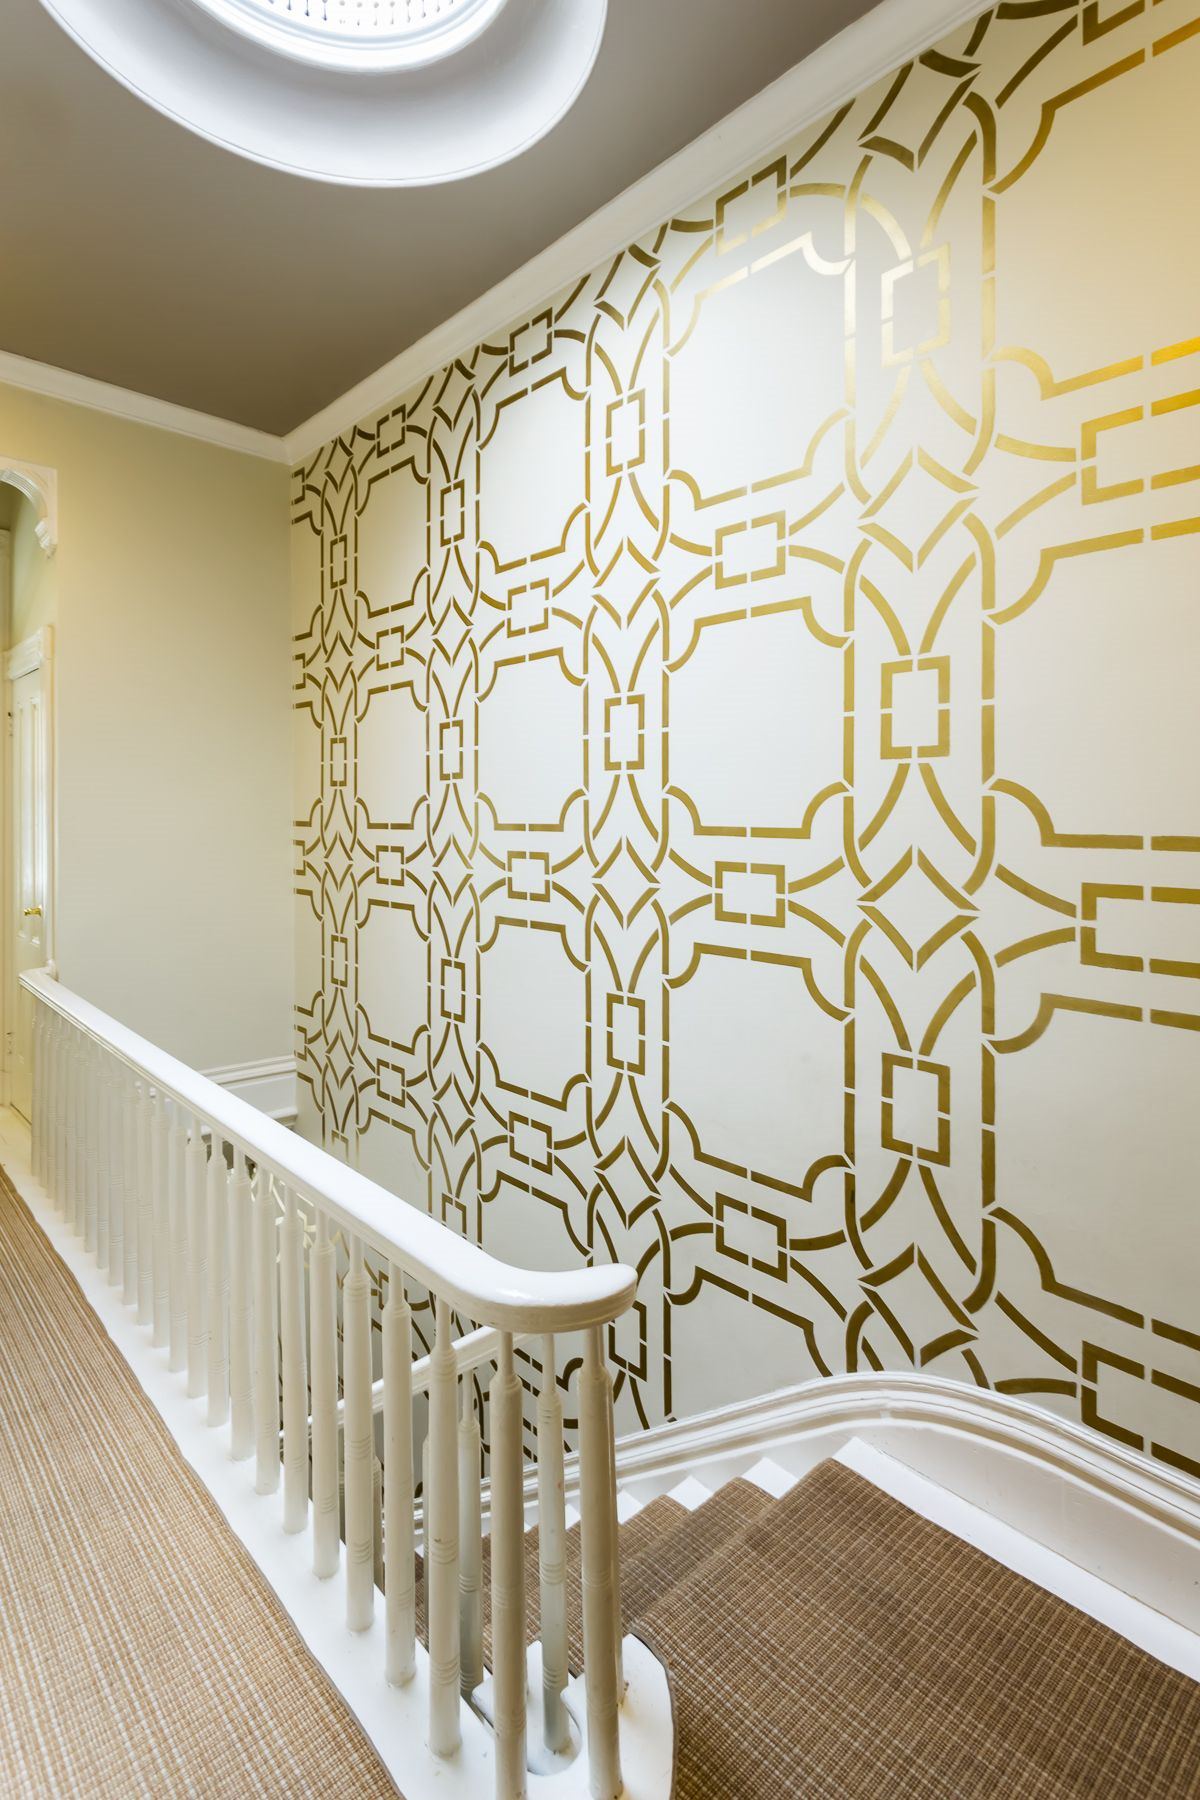 راه پله ای که از ترکیب کاغذ دیواری متالیک و رنگ کرم در آن استفاده شده است